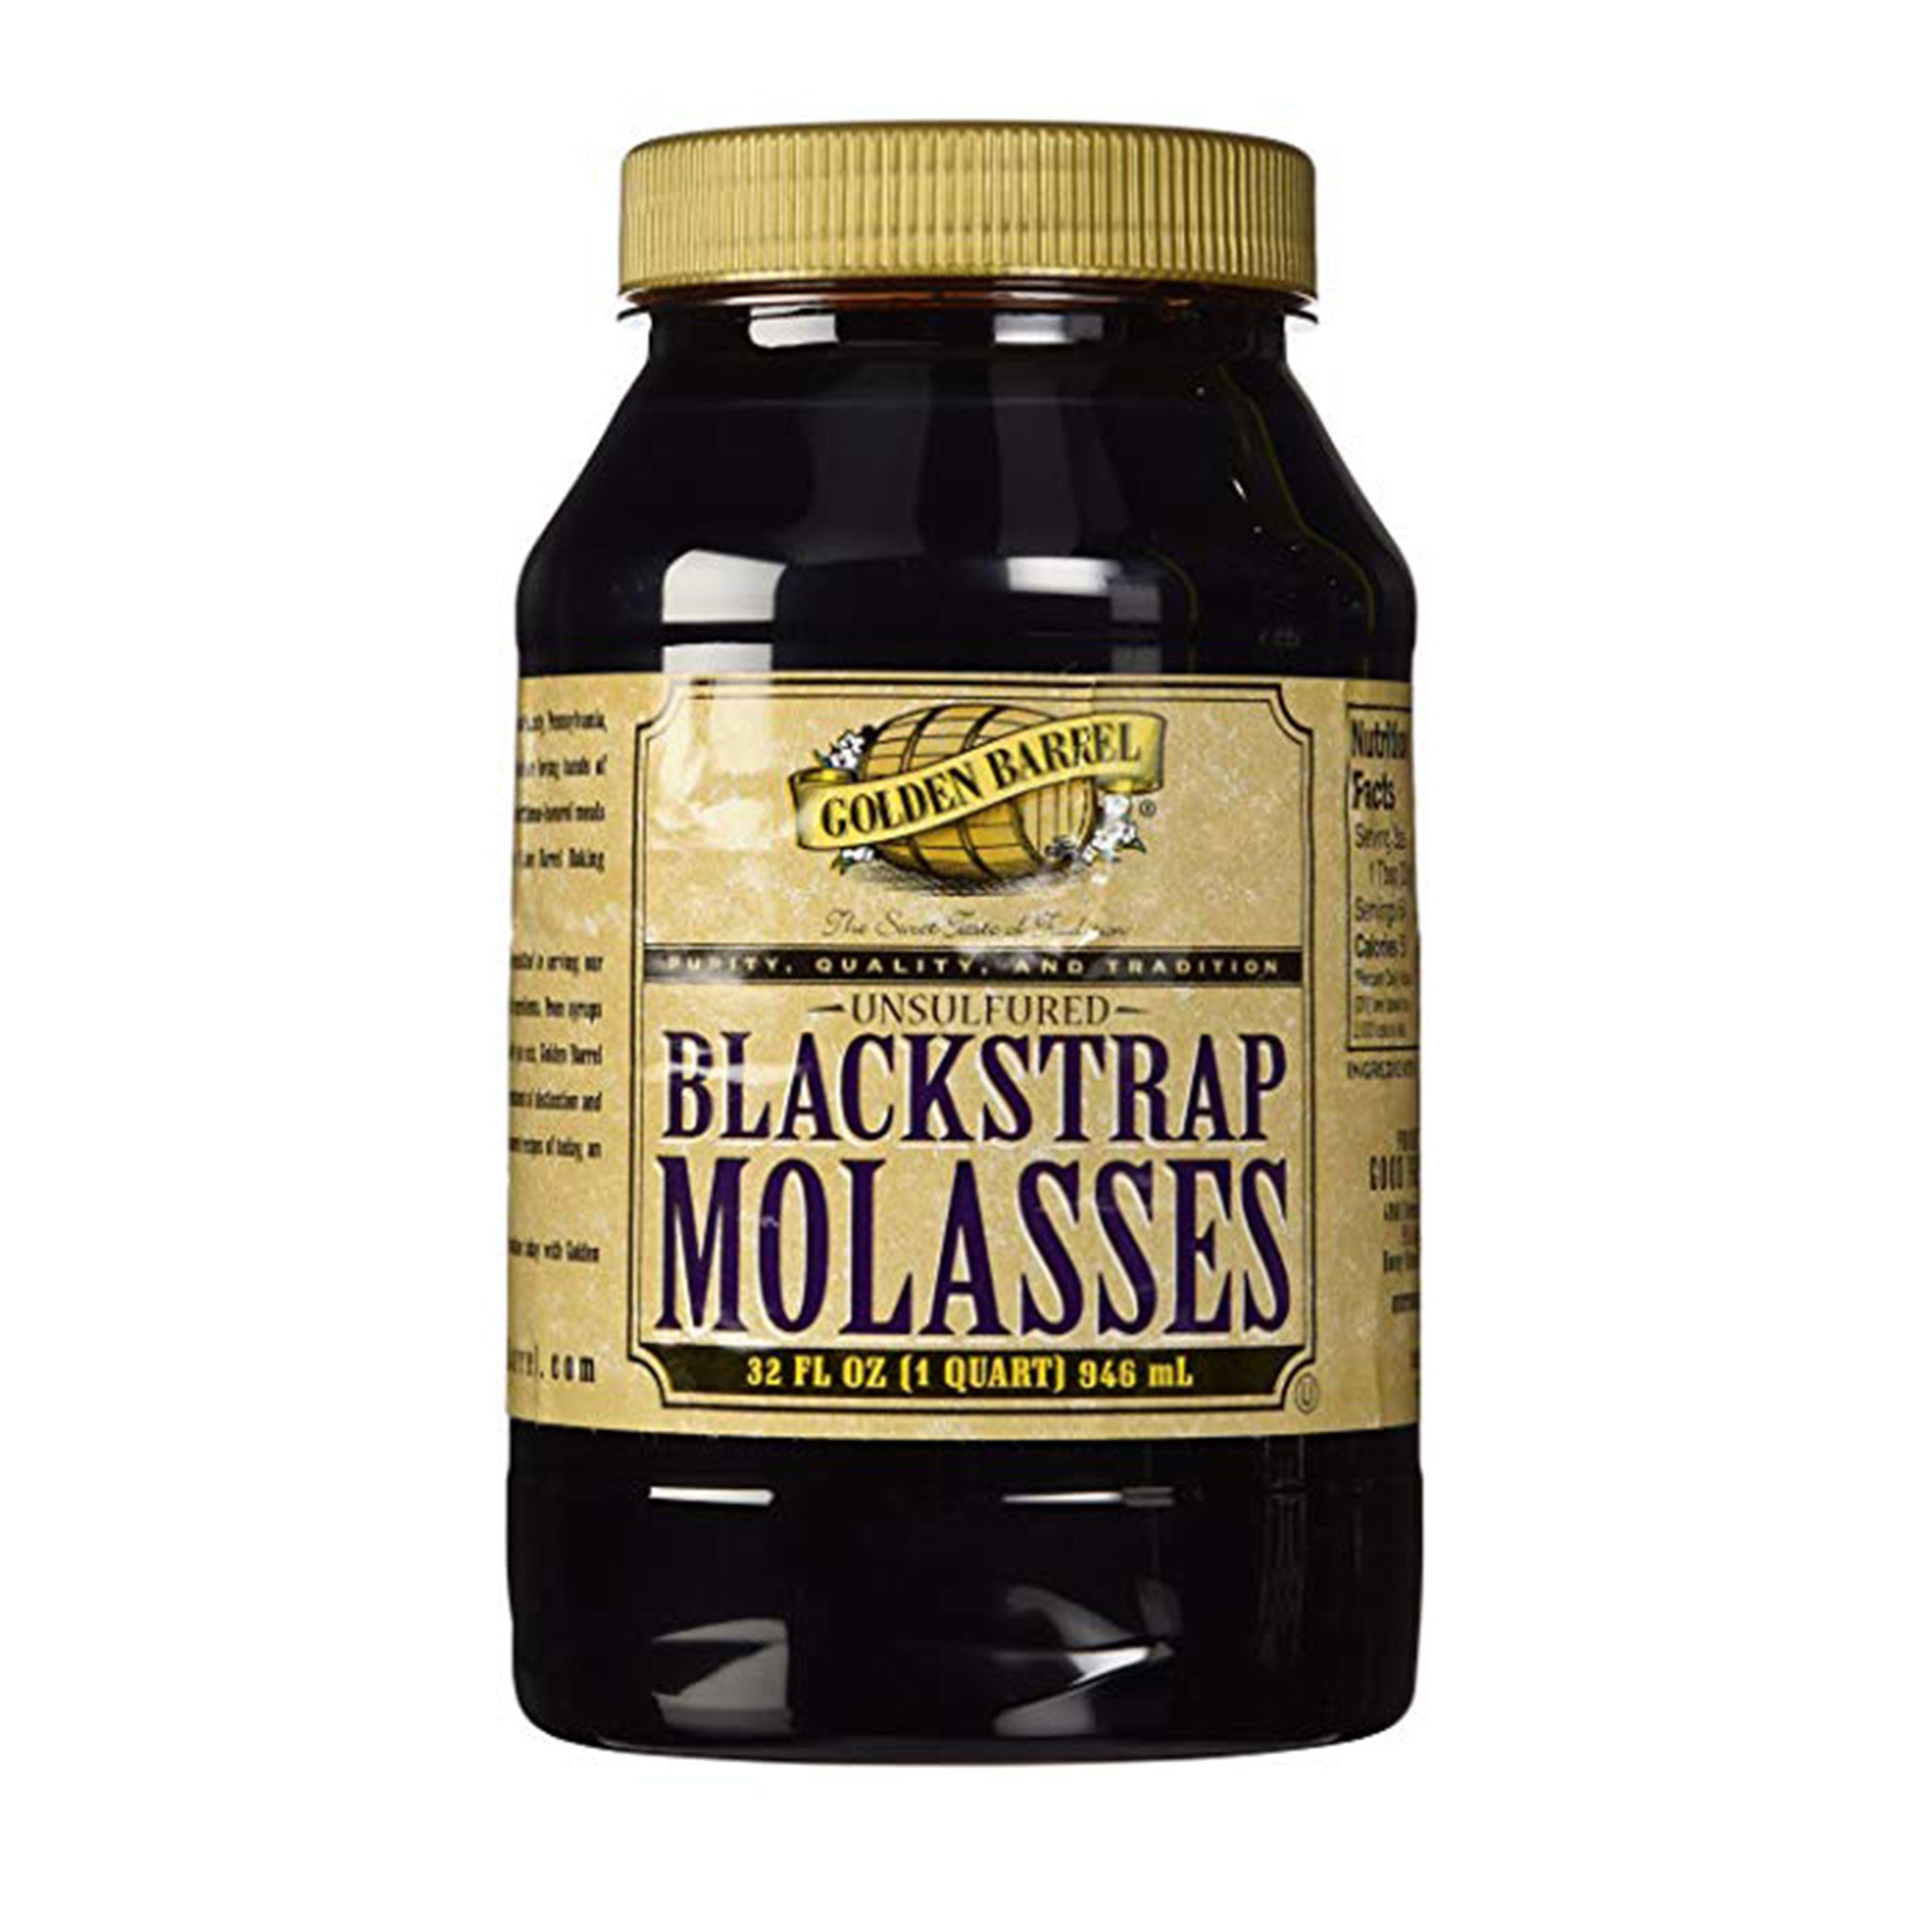 Golden Barrel Blackstrap Molasses Coccibeauty 6966